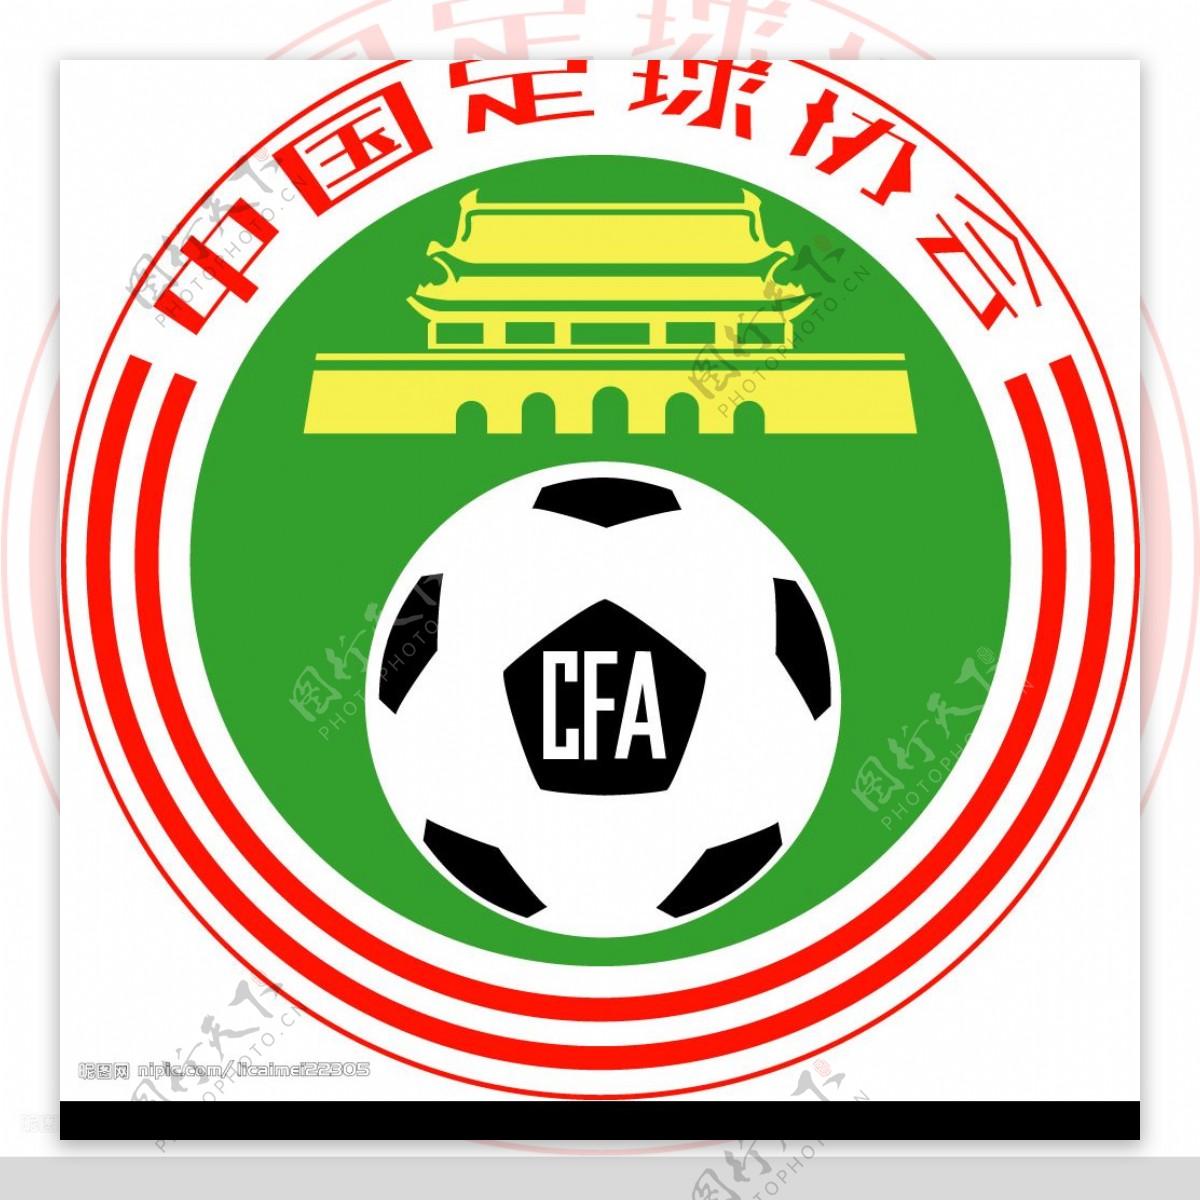 中国足球协会CFA图片